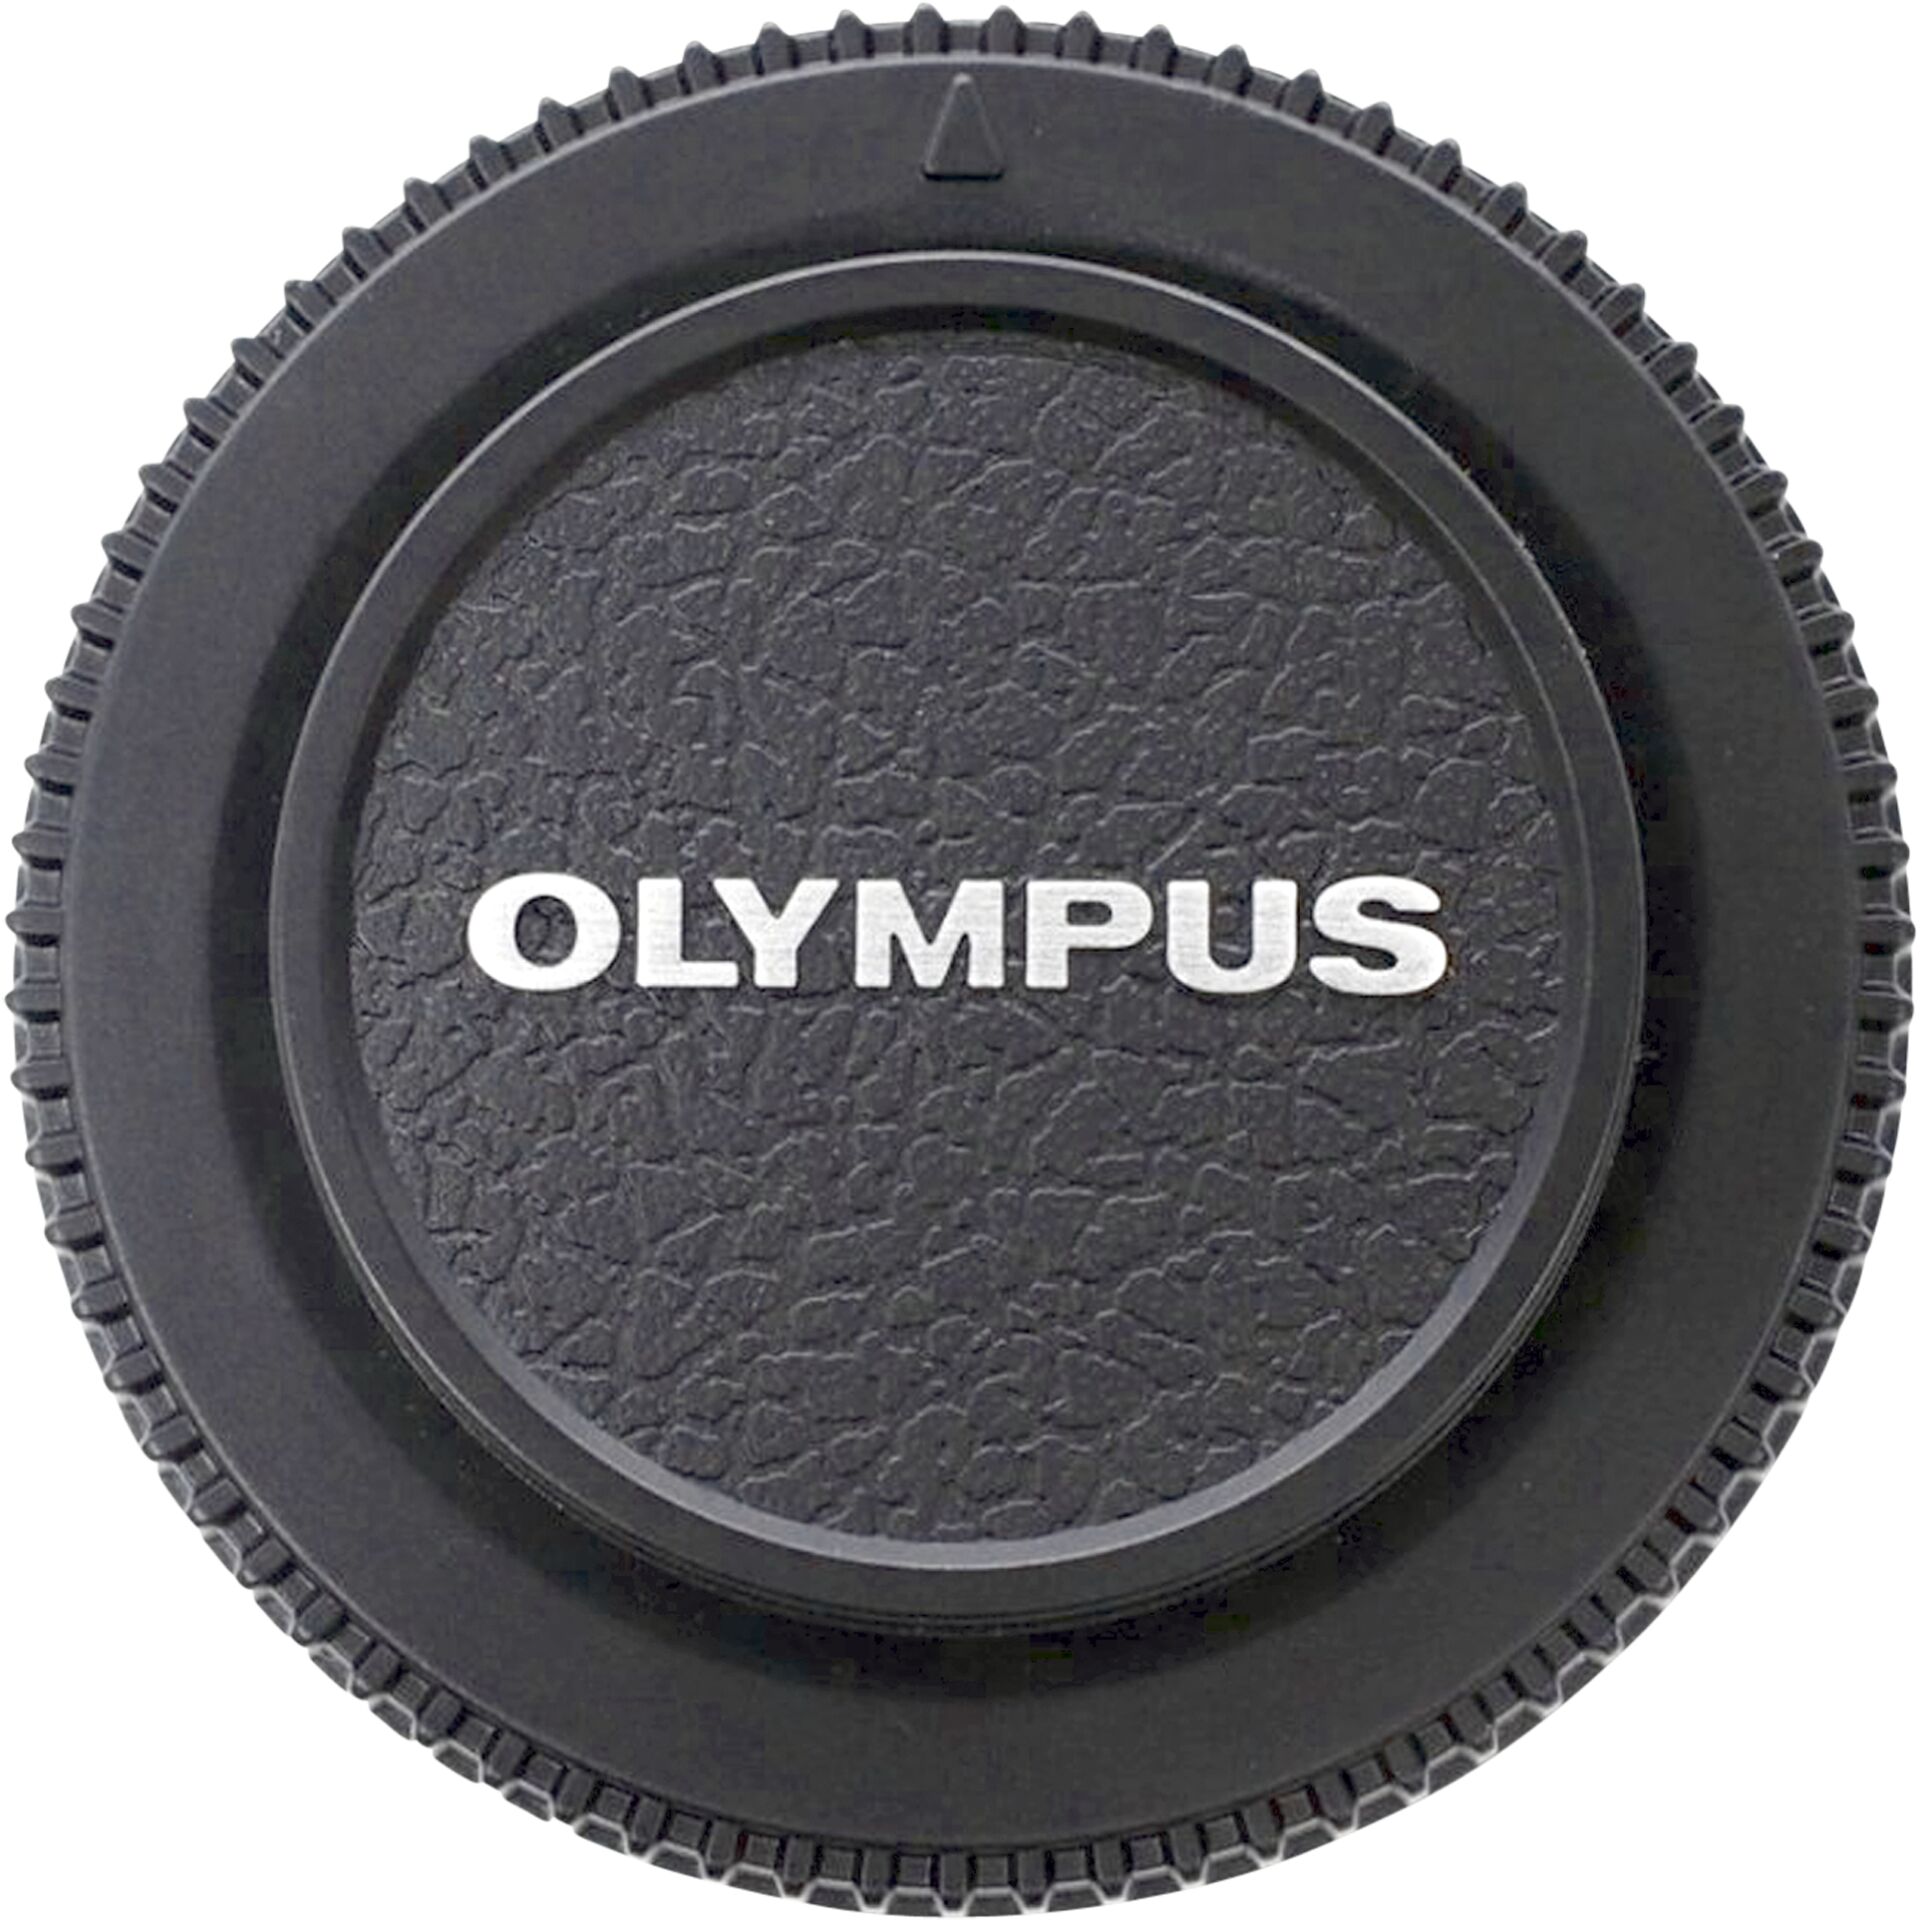 Olympus BC-3 Gehäusekappe für 1,4 x Telekonverter